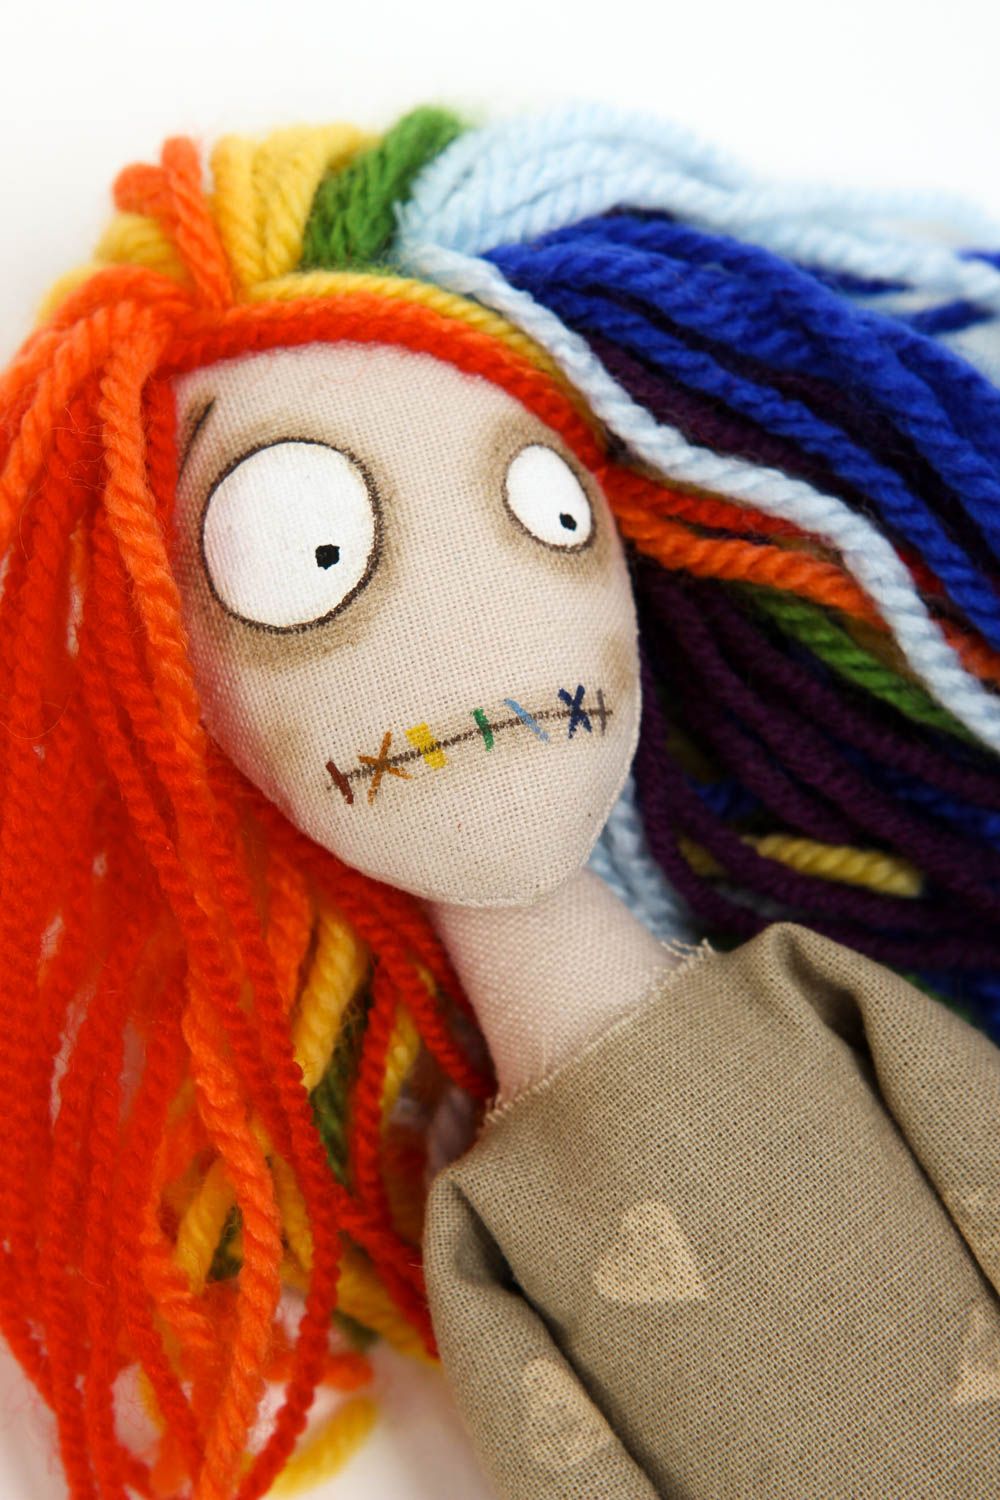 Кукла ручной работы кукла из ткани авторская кукла с радужными локонами фото 2